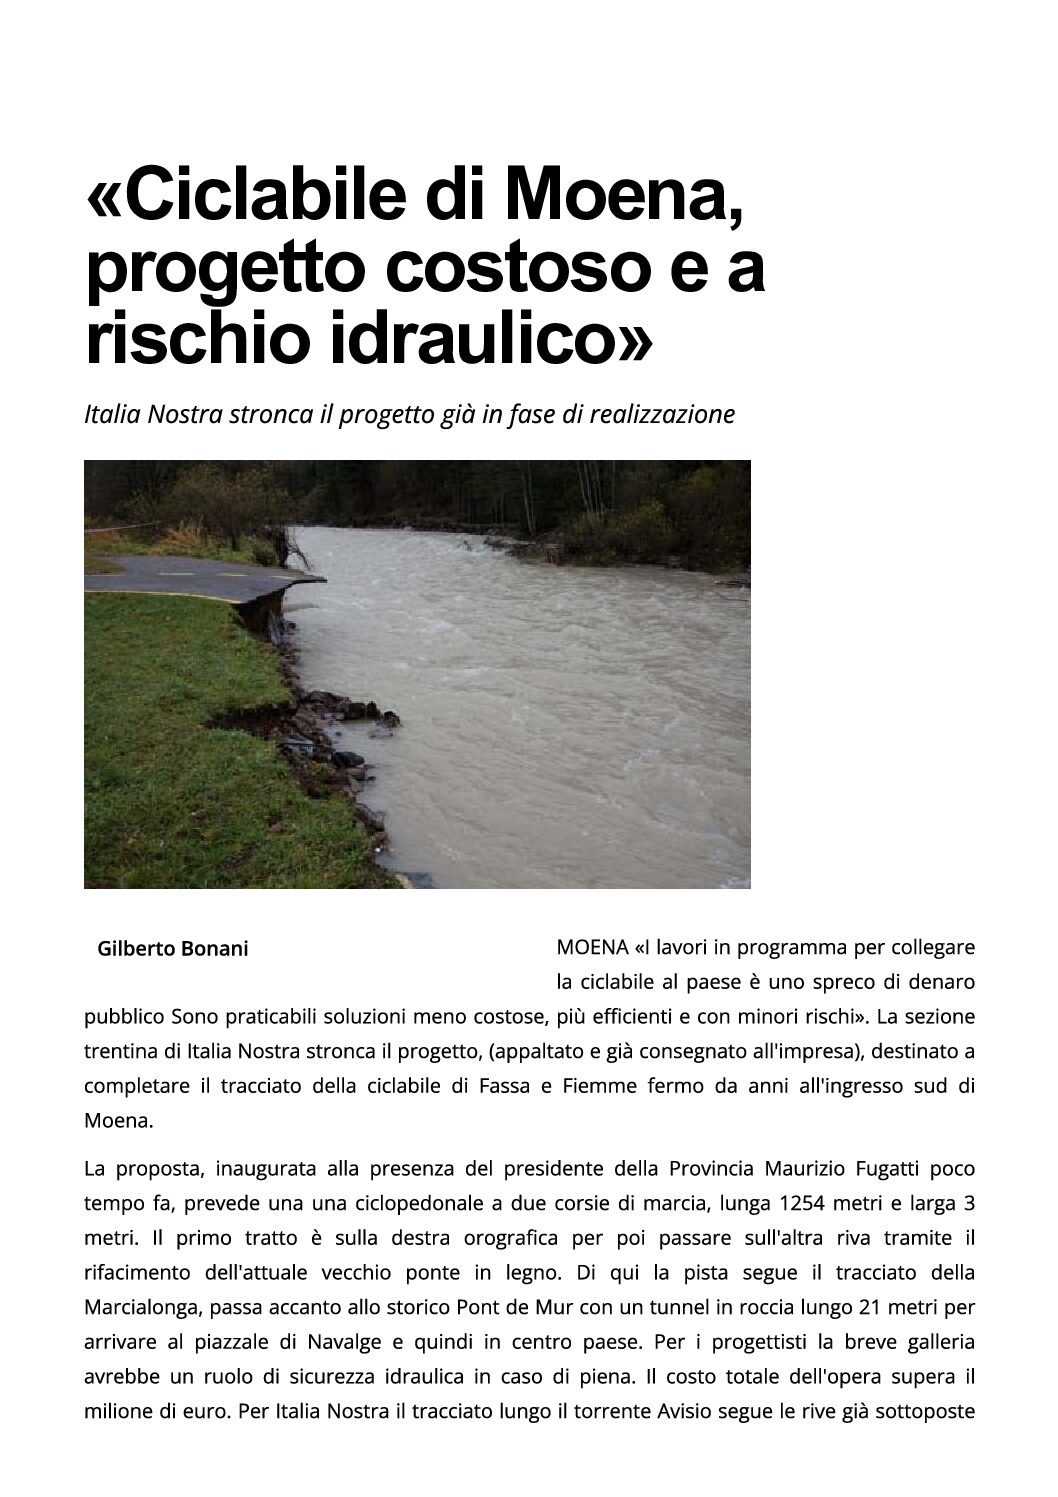 Ciclabile di Moena: progetto costoso e a rischio idraulico. Italia Nostra propone un tracciato alternativo